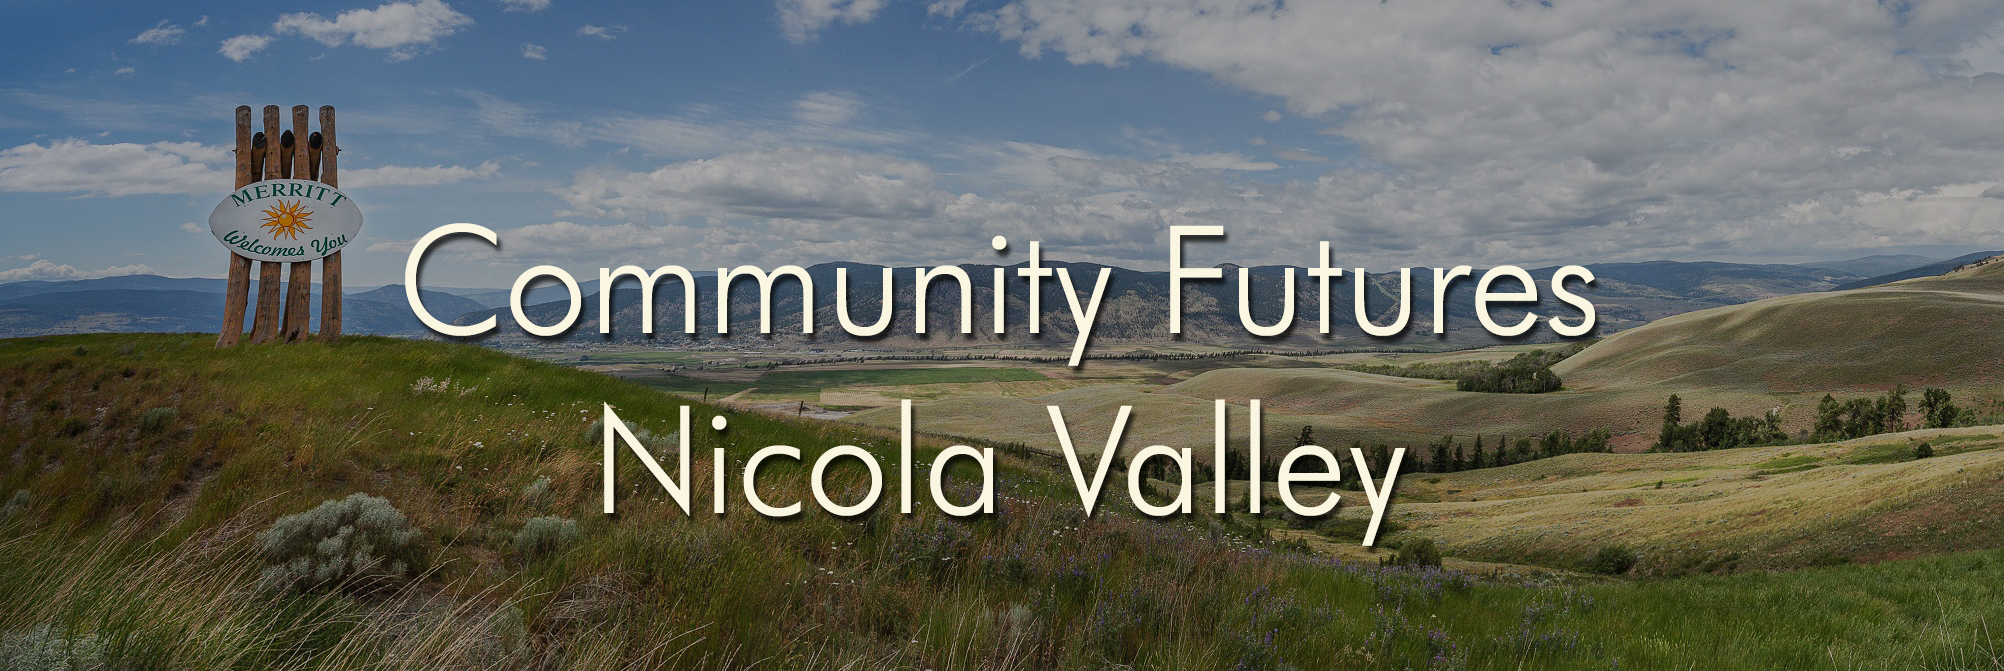 Community Futures Nicola Valley Header